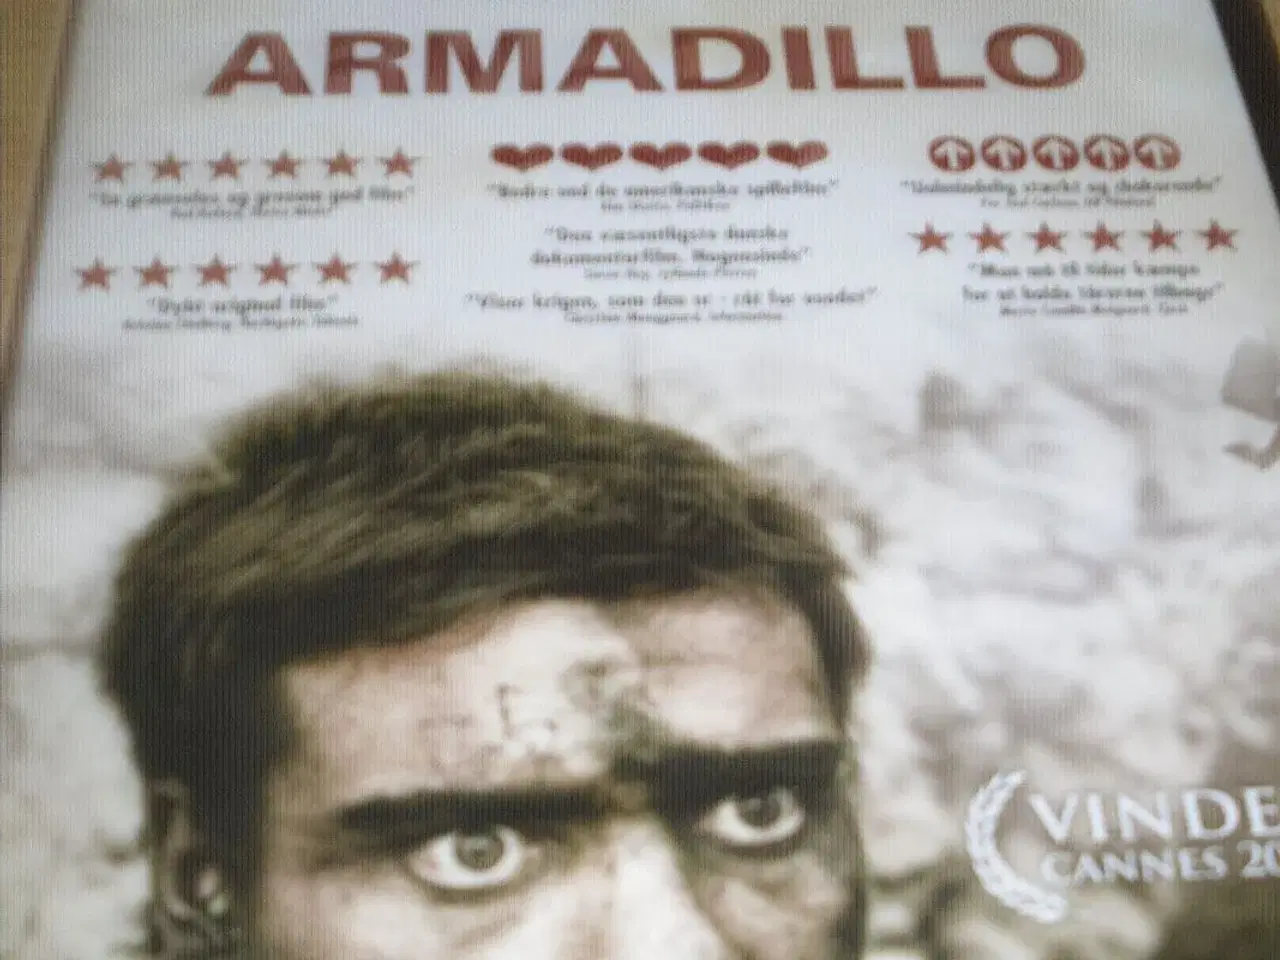 Billede 1 - ARMADILLO. Vinder Cannes 2010.